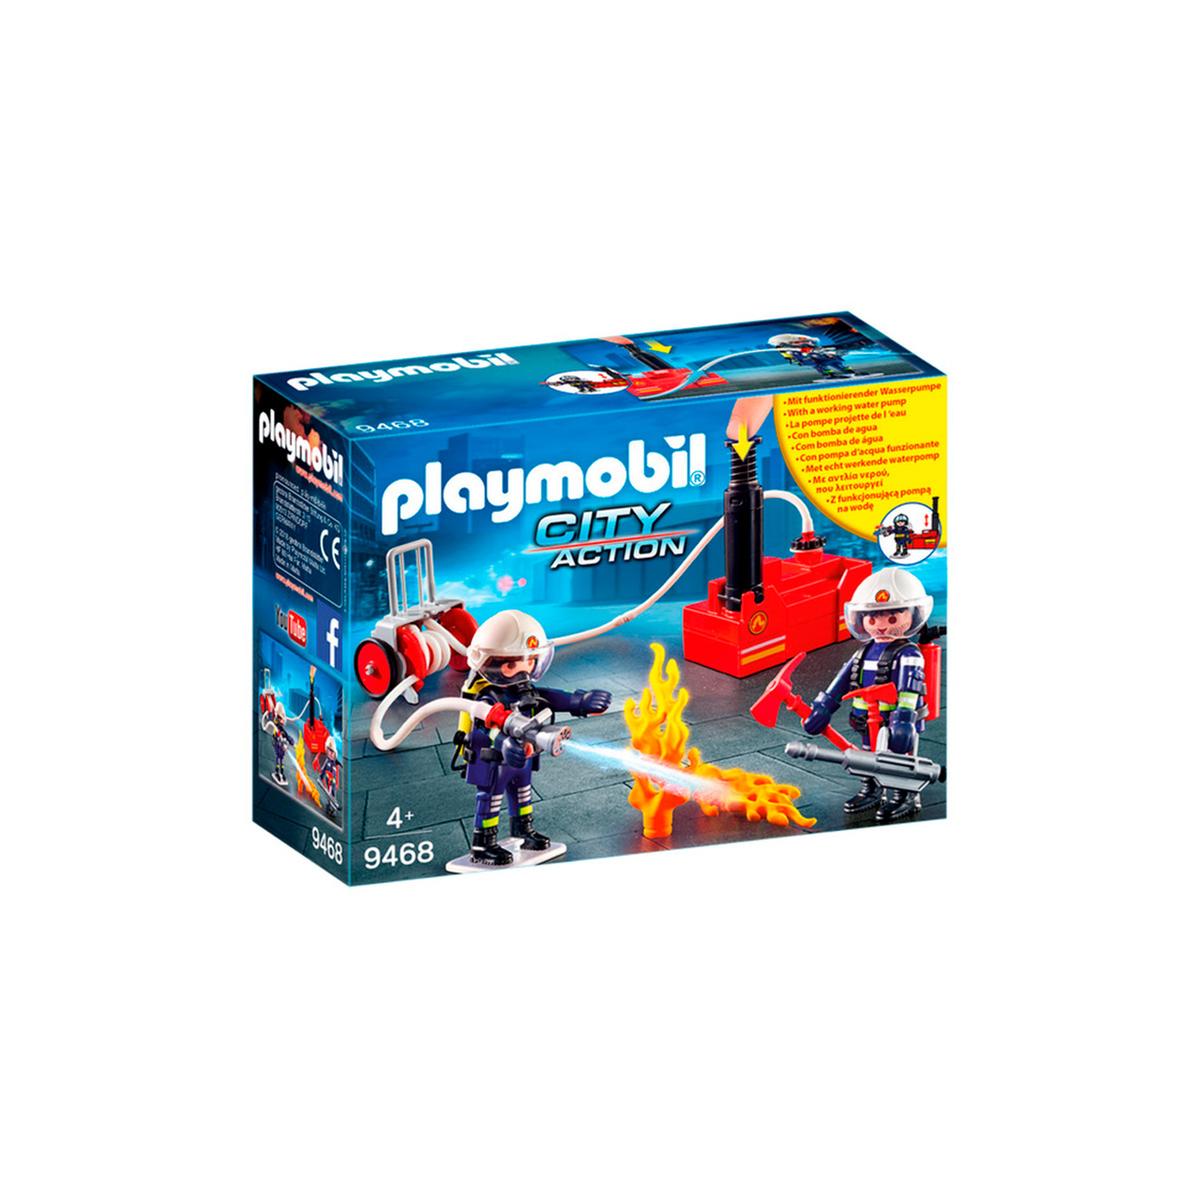 Playmobil - Bomberos con Bomba de Agua - 9468 | City Action Bomberos |  Toys"R"Us España